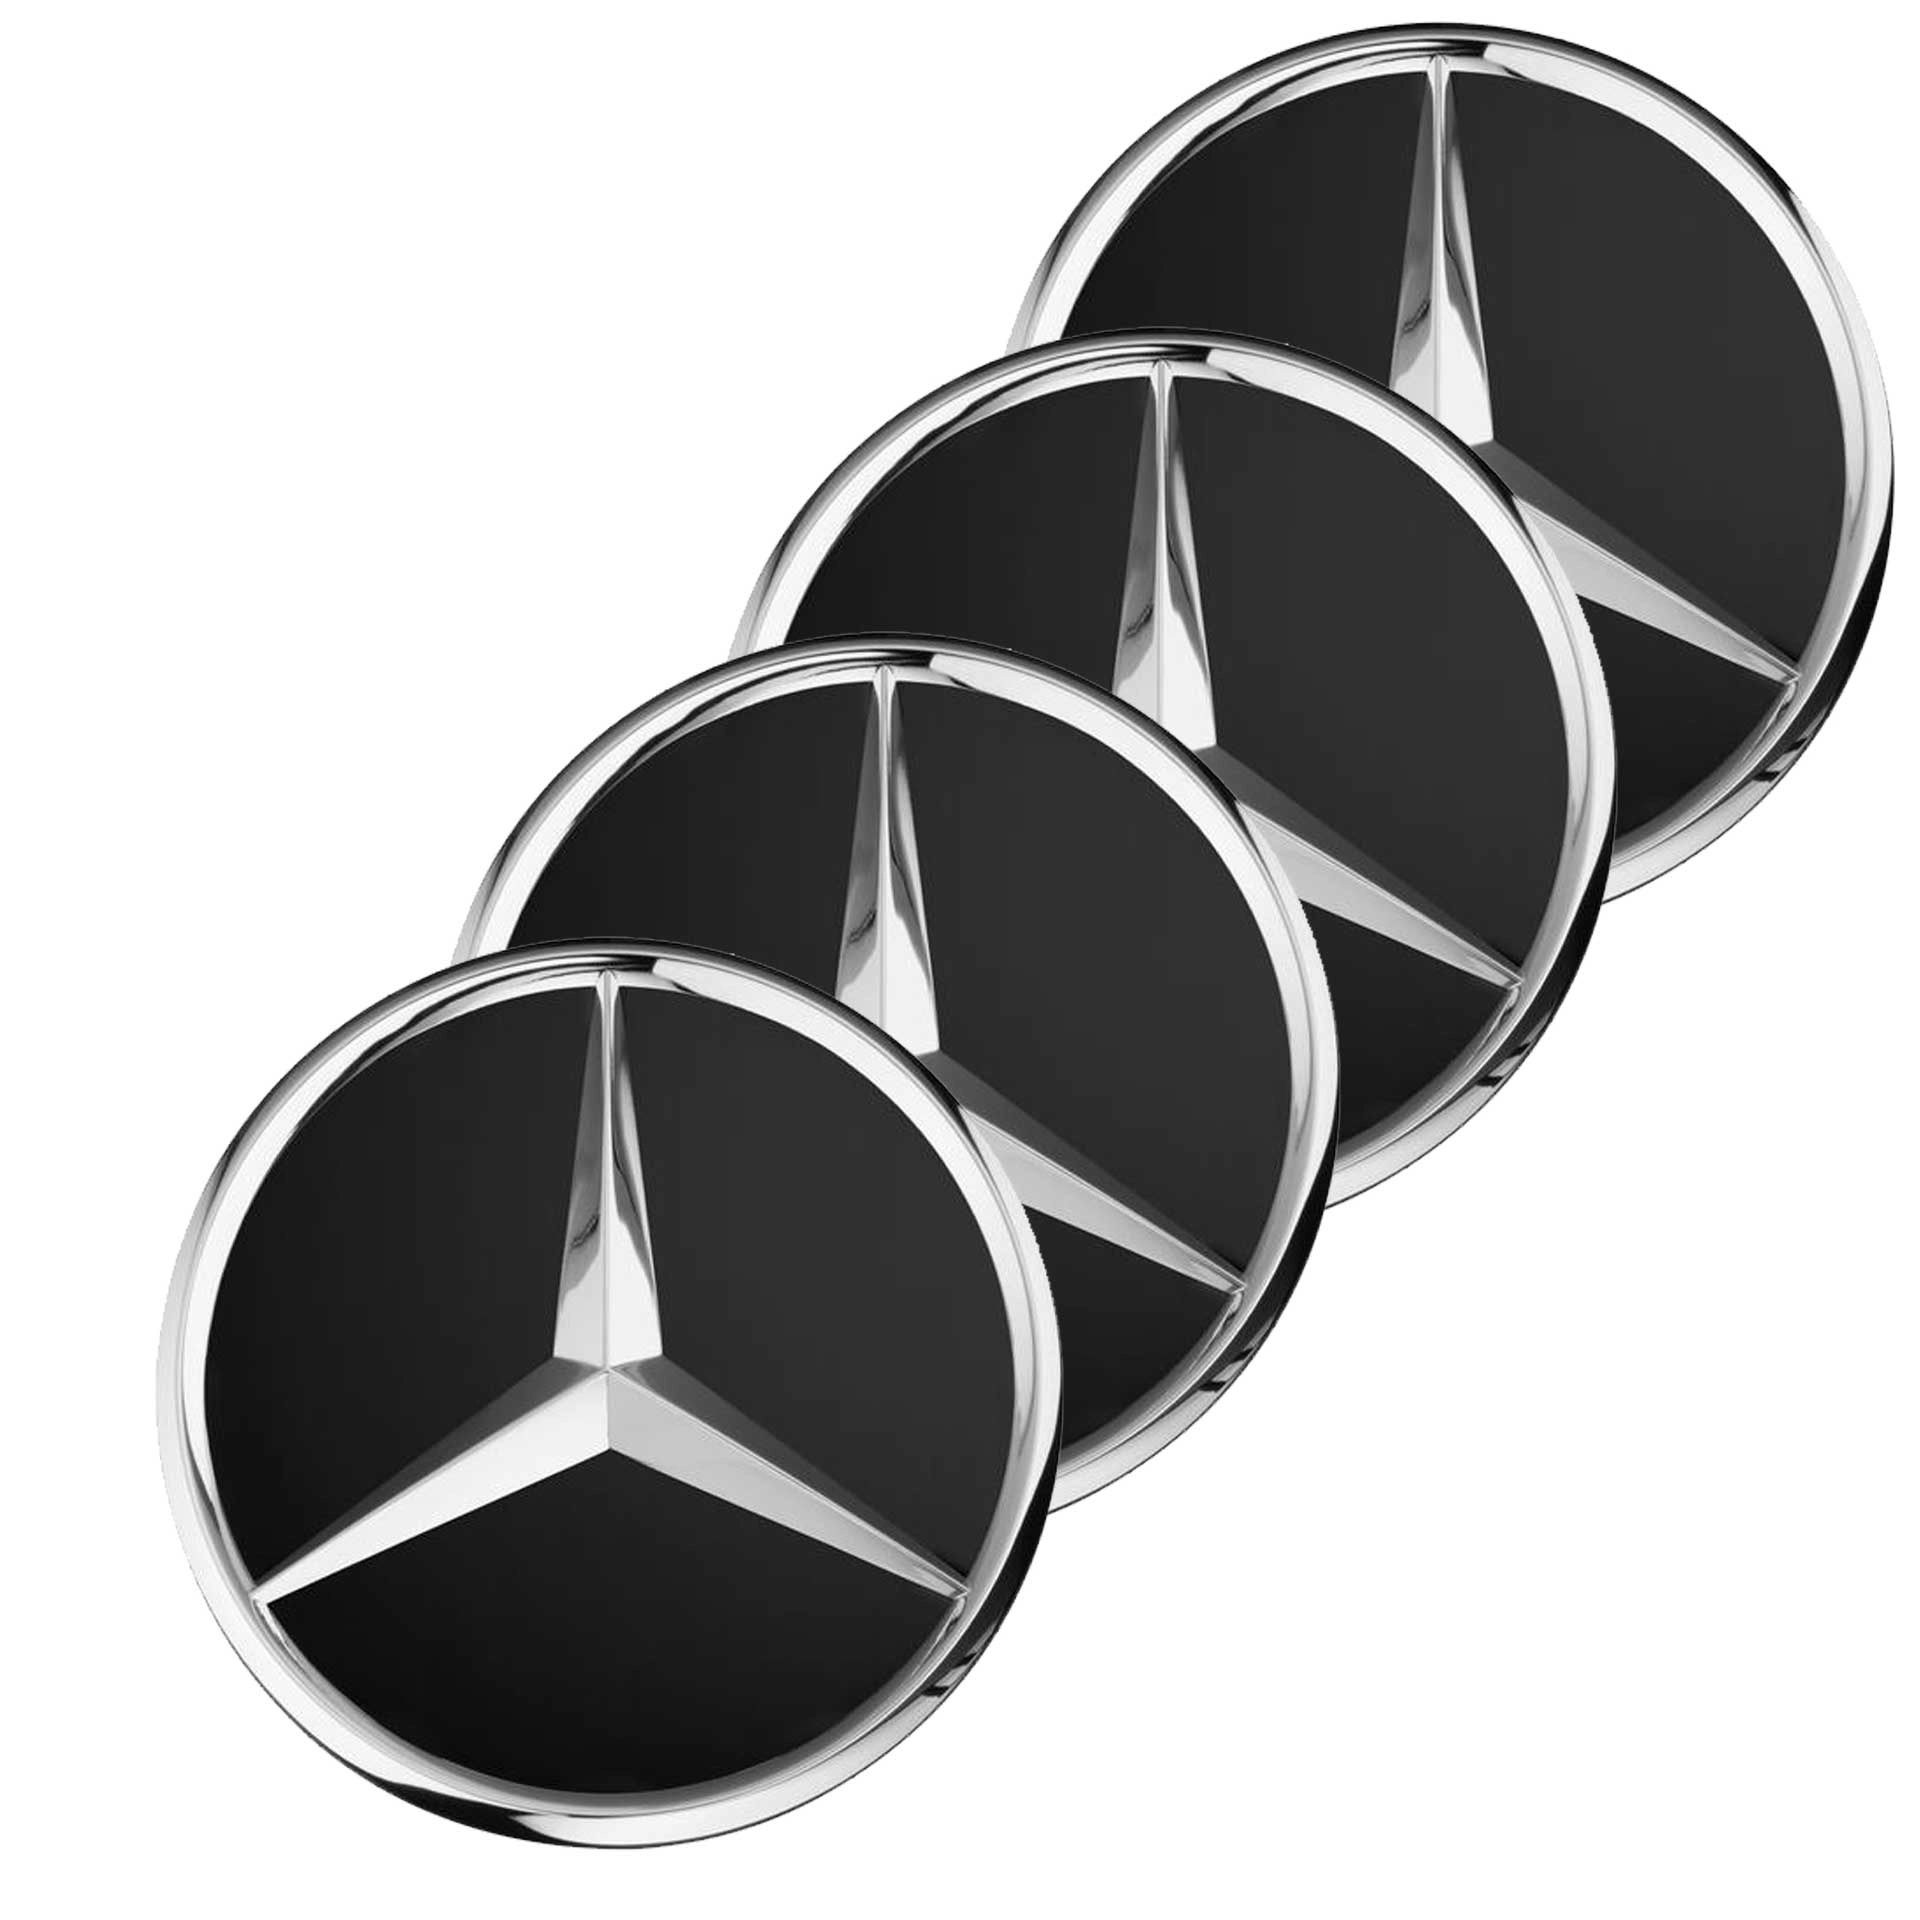 Mercedes-Benz Radnabenabdeckung Stern schwarz matt 4-teilige